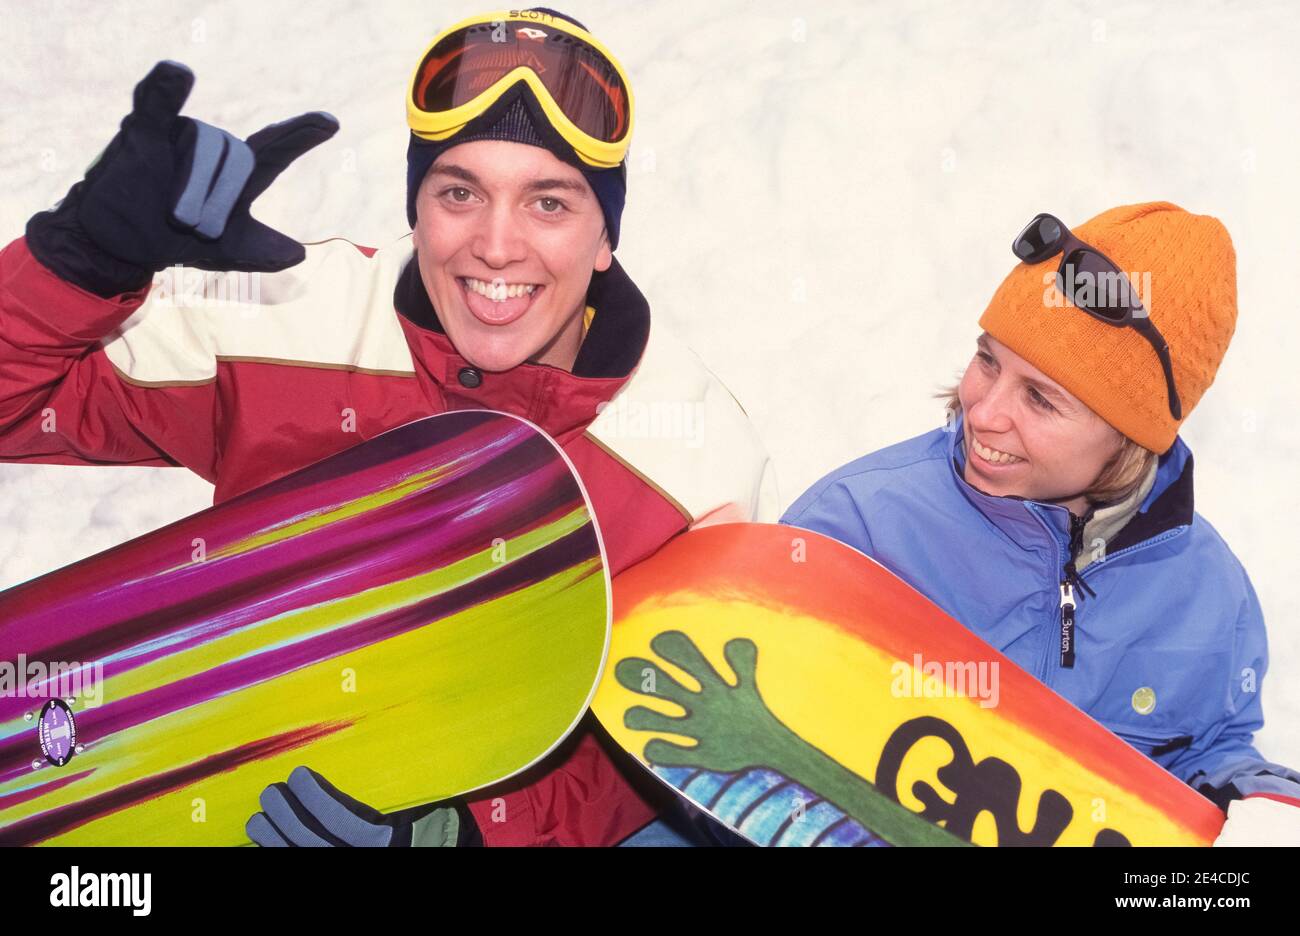 Dos adolescentes se detienen con sus coloridas snowboards para un retrato informal frente a un banco de nieve en el Whitefish Mountain Resort en Whitefish, Montana, Estados Unidos. Combinando los elementos del esquí, el skateboard y el surf, el snowboard fue desarrollado en los Estados Unidos en la década de 1960. A medida que su popularidad creció en todo el país durante las próximas dos décadas, algunas estaciones de esquí inicialmente prohibió el deporte en sus pistas. Cada cuatro años desde 1998, el snowboard recibe atención internacional durante los Juegos Olímpicos de Invierno. Foto de stock